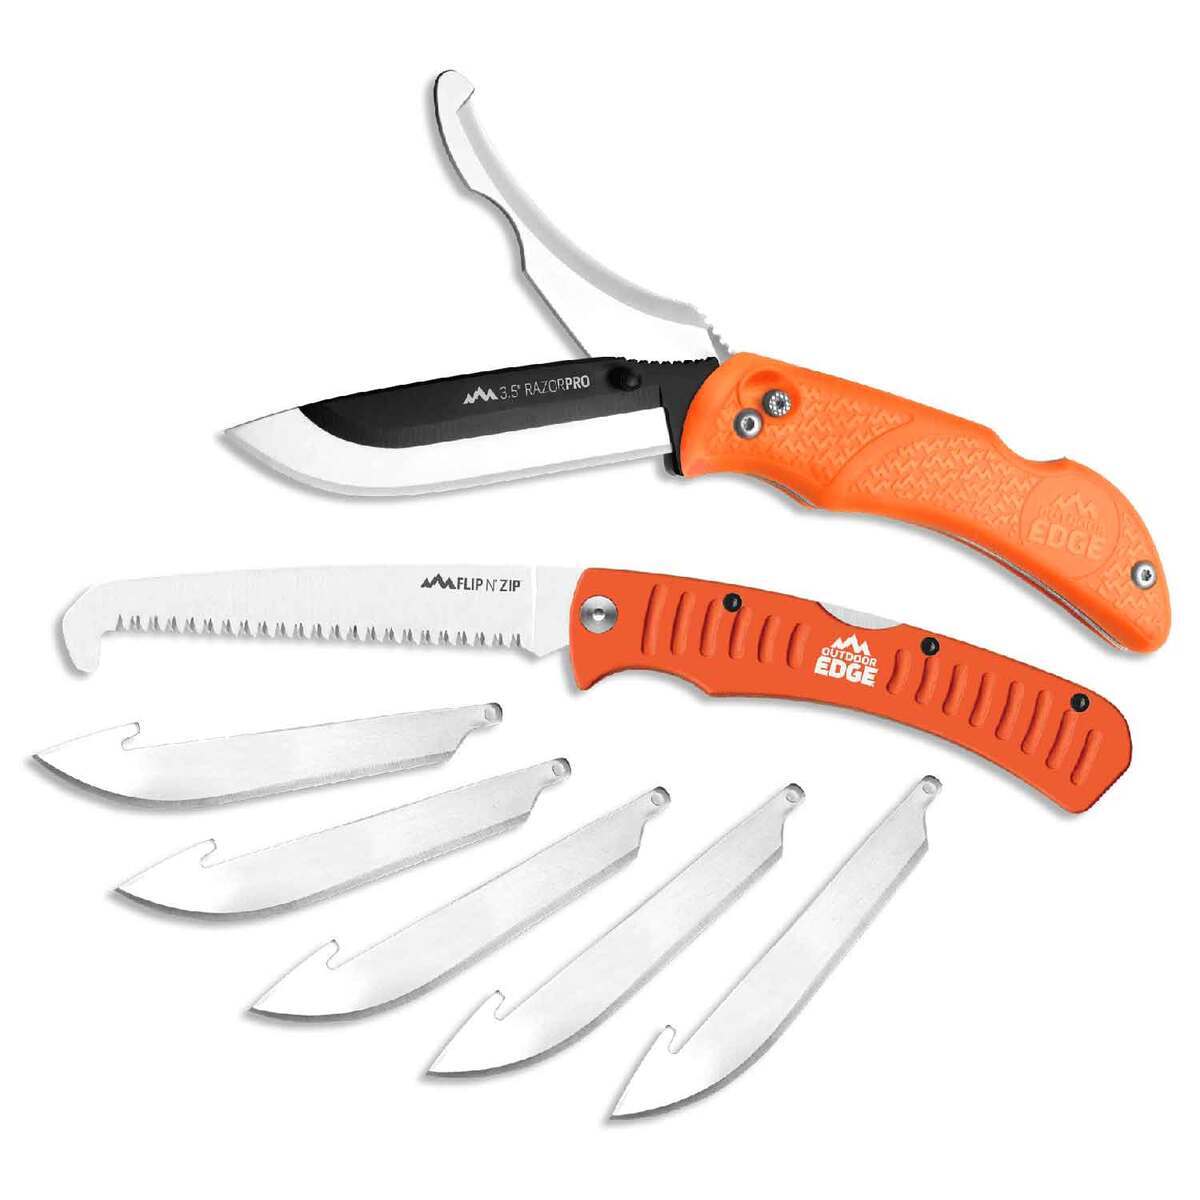 https://www.sportsmans.com/medias/outdoor-edge-razorpro-saw-combo-35-inch-knife-combo-orange-1416373-1.jpg?context=bWFzdGVyfGltYWdlc3w1NTA5M3xpbWFnZS9qcGVnfGhiNC9oMzcvMTA4MTc1OTIwOTg4NDYvMTQxNjM3My0xX2Jhc2UtY29udmVyc2lvbkZvcm1hdF8xMjAwLWNvbnZlcnNpb25Gb3JtYXR8ZTM0OGM4Yzc1ODdiNTY1M2FjMjIyZjZiYWRjYzljZGM5MmU0ZDNiMjIzYzE2ZDU0OTYwZDIxZGMxOThkMmRjNg